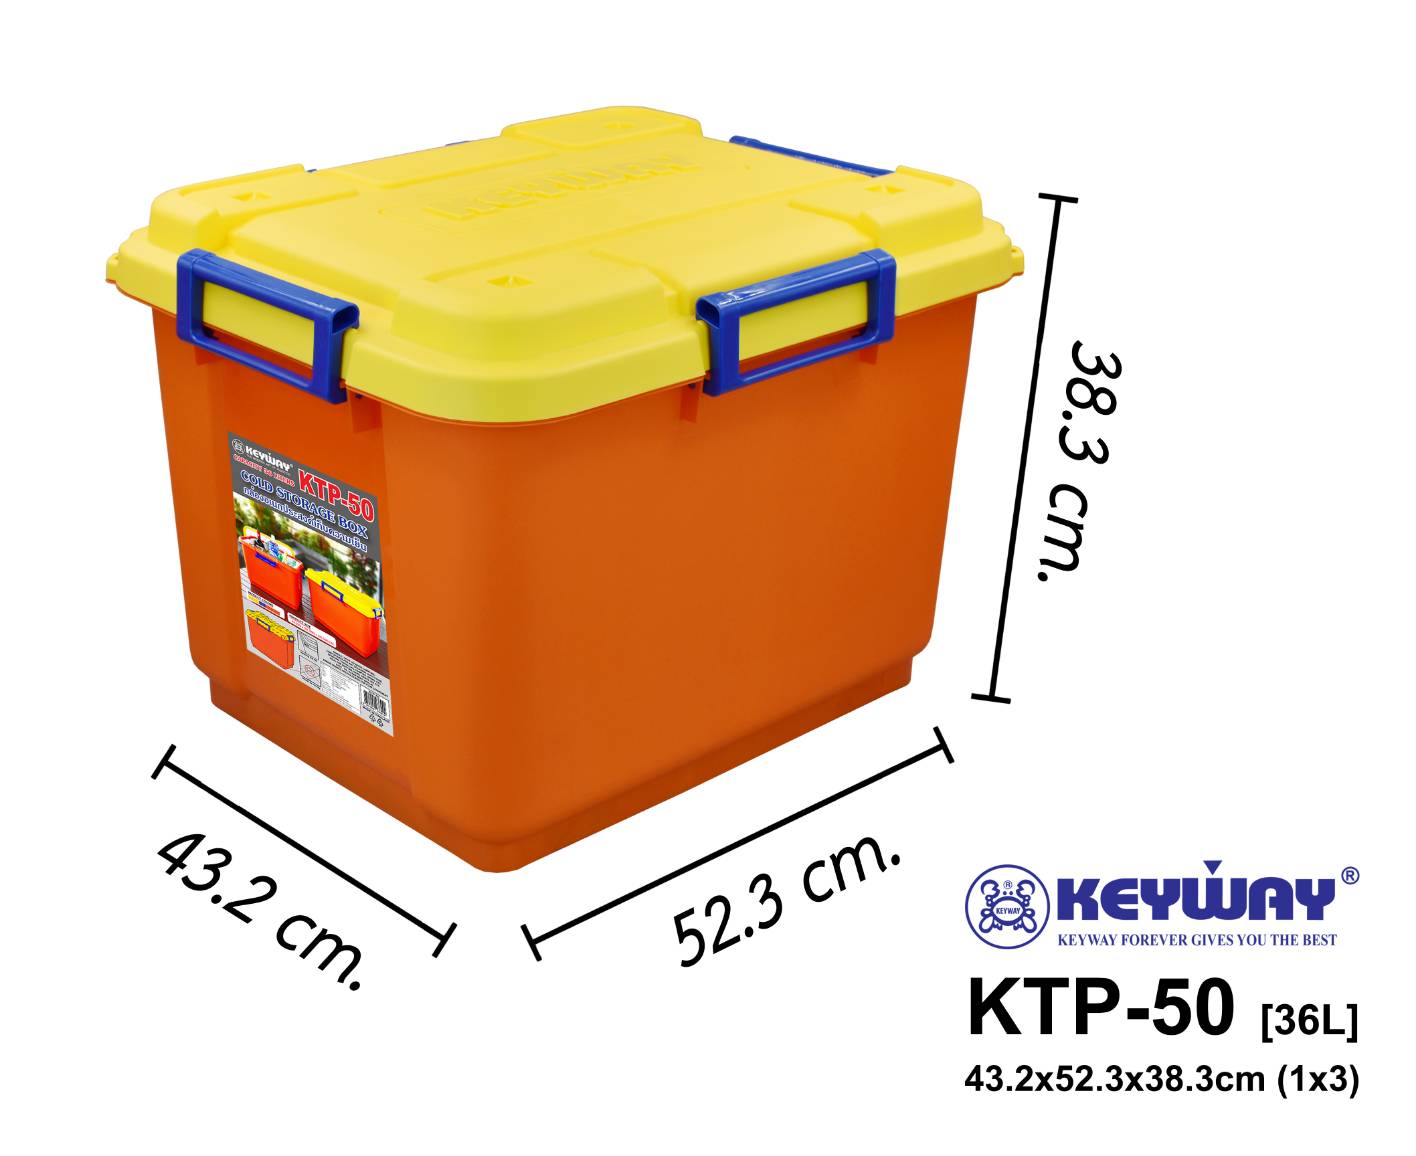 กล่องเก็บรักษาความเย็น 36L (Cold Storage Box) KTP-50 ตรา KEYWAY